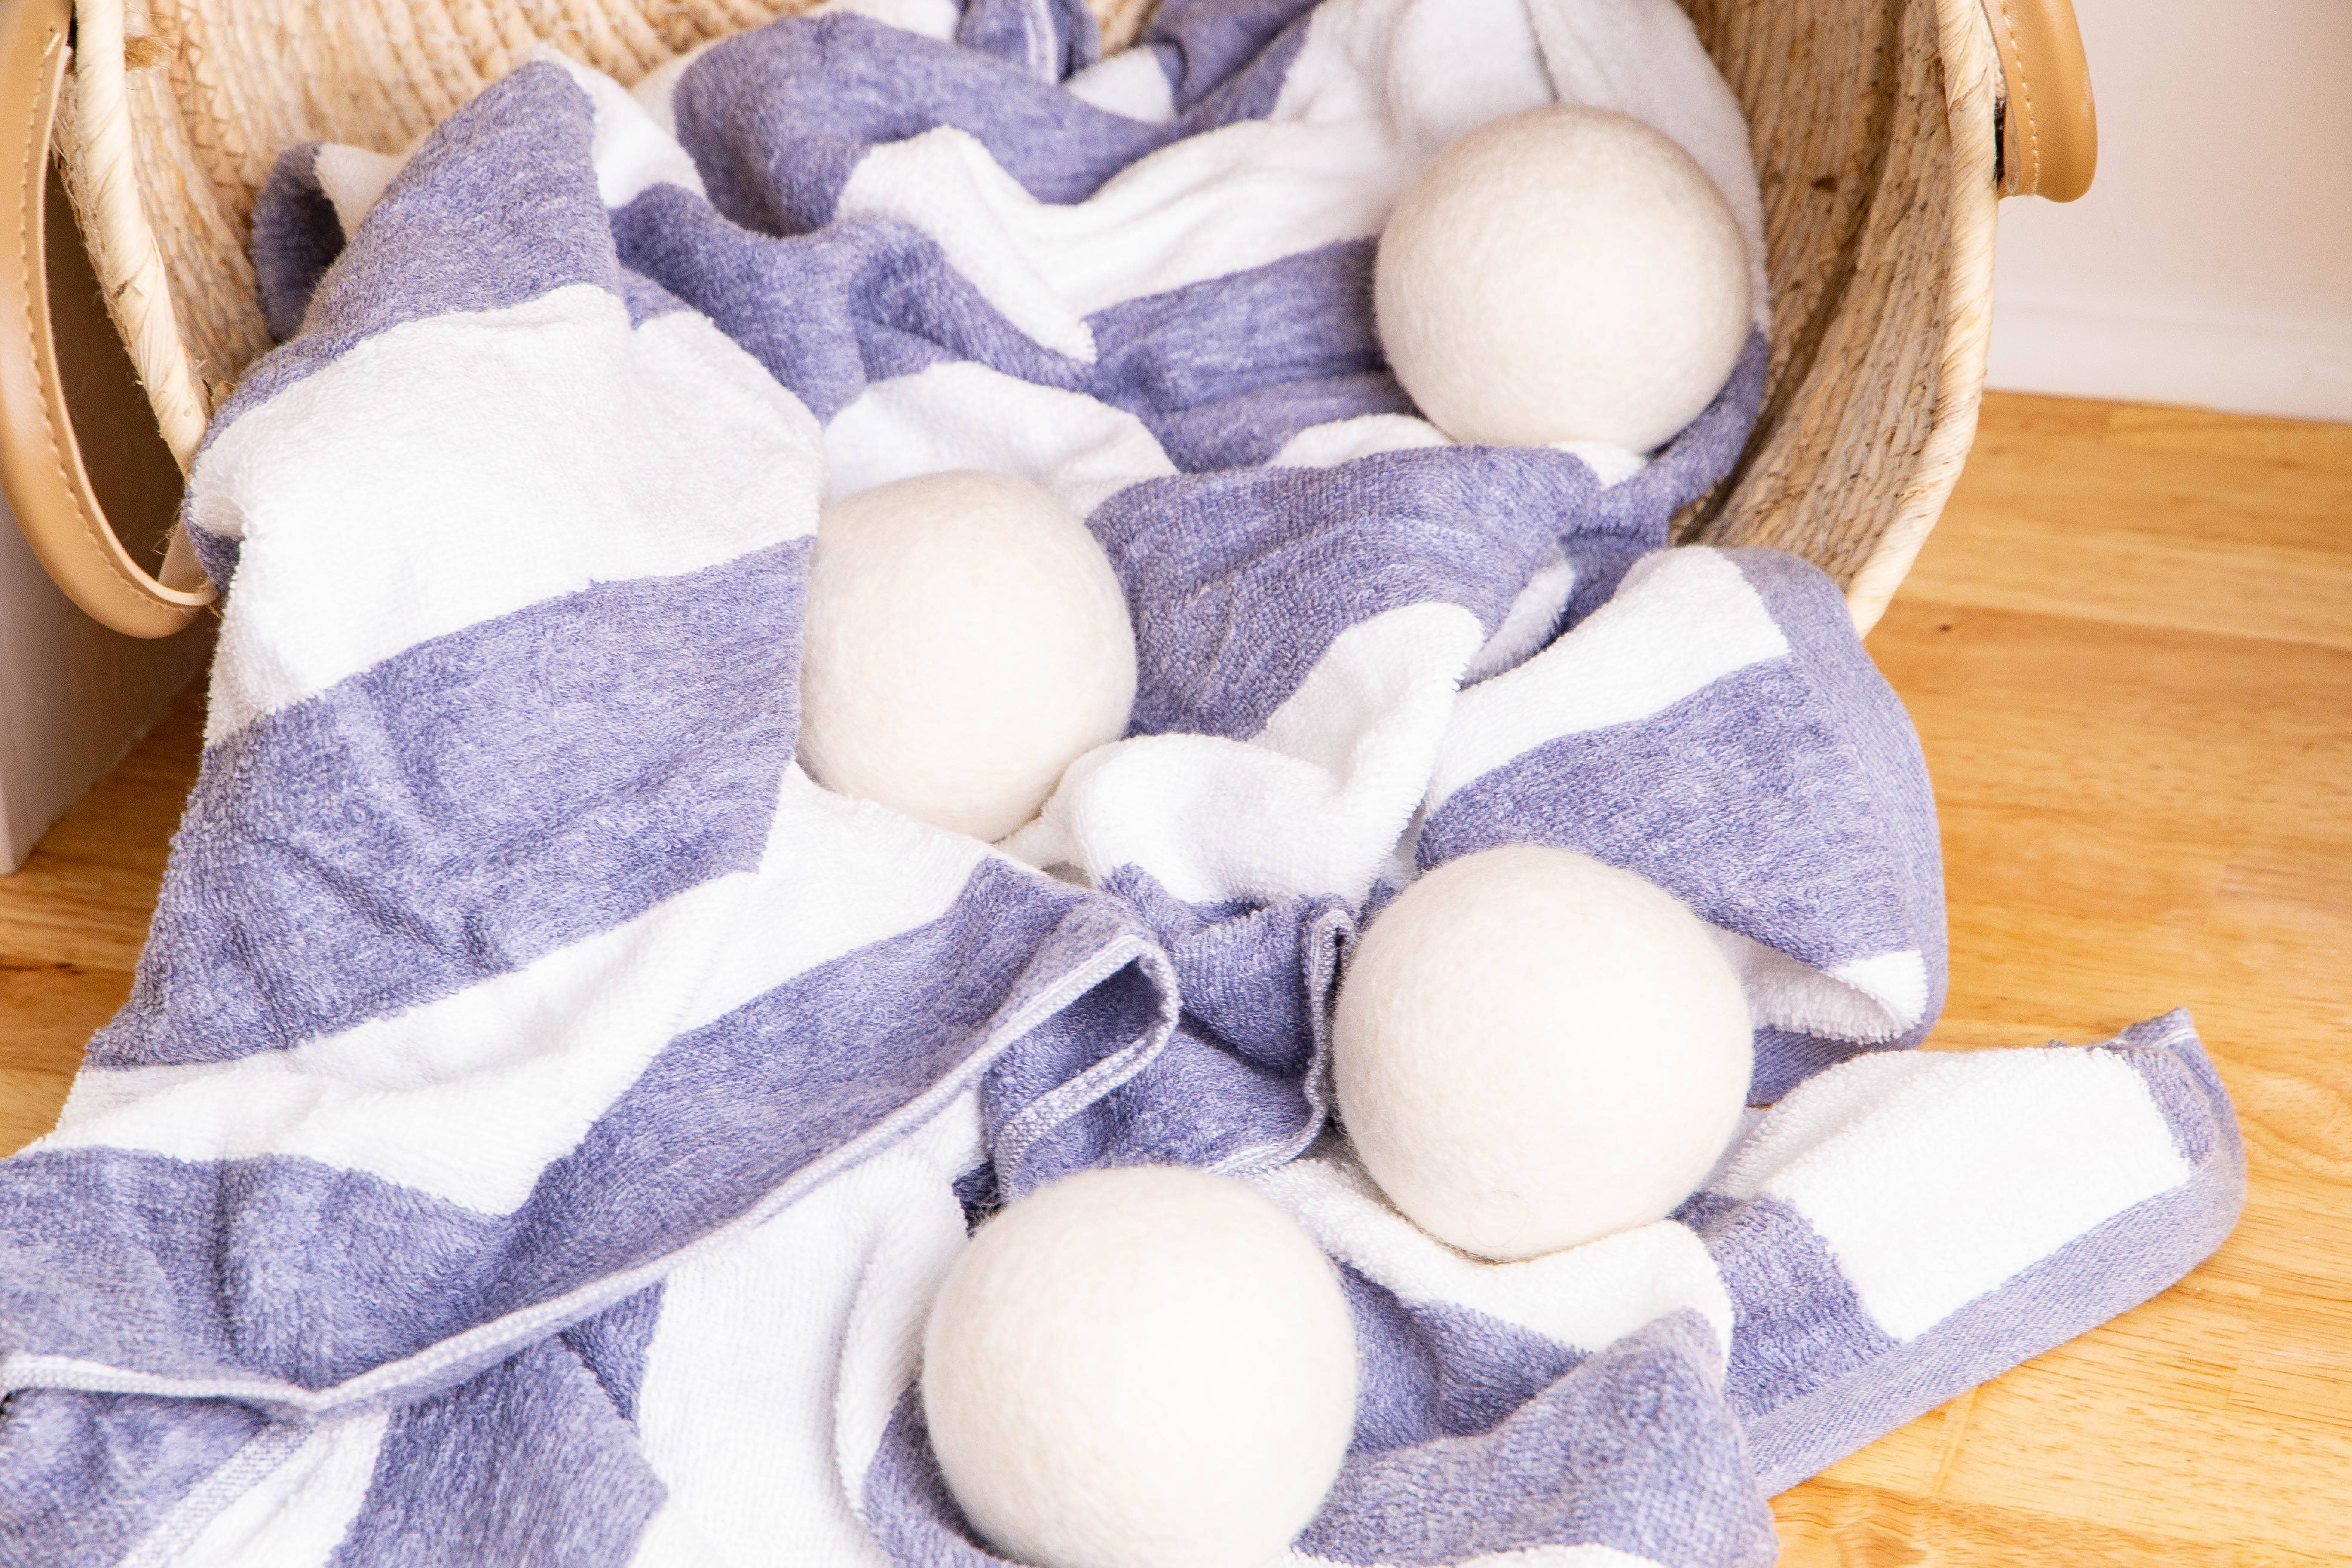 Creamy White - Eco Dryer Balls